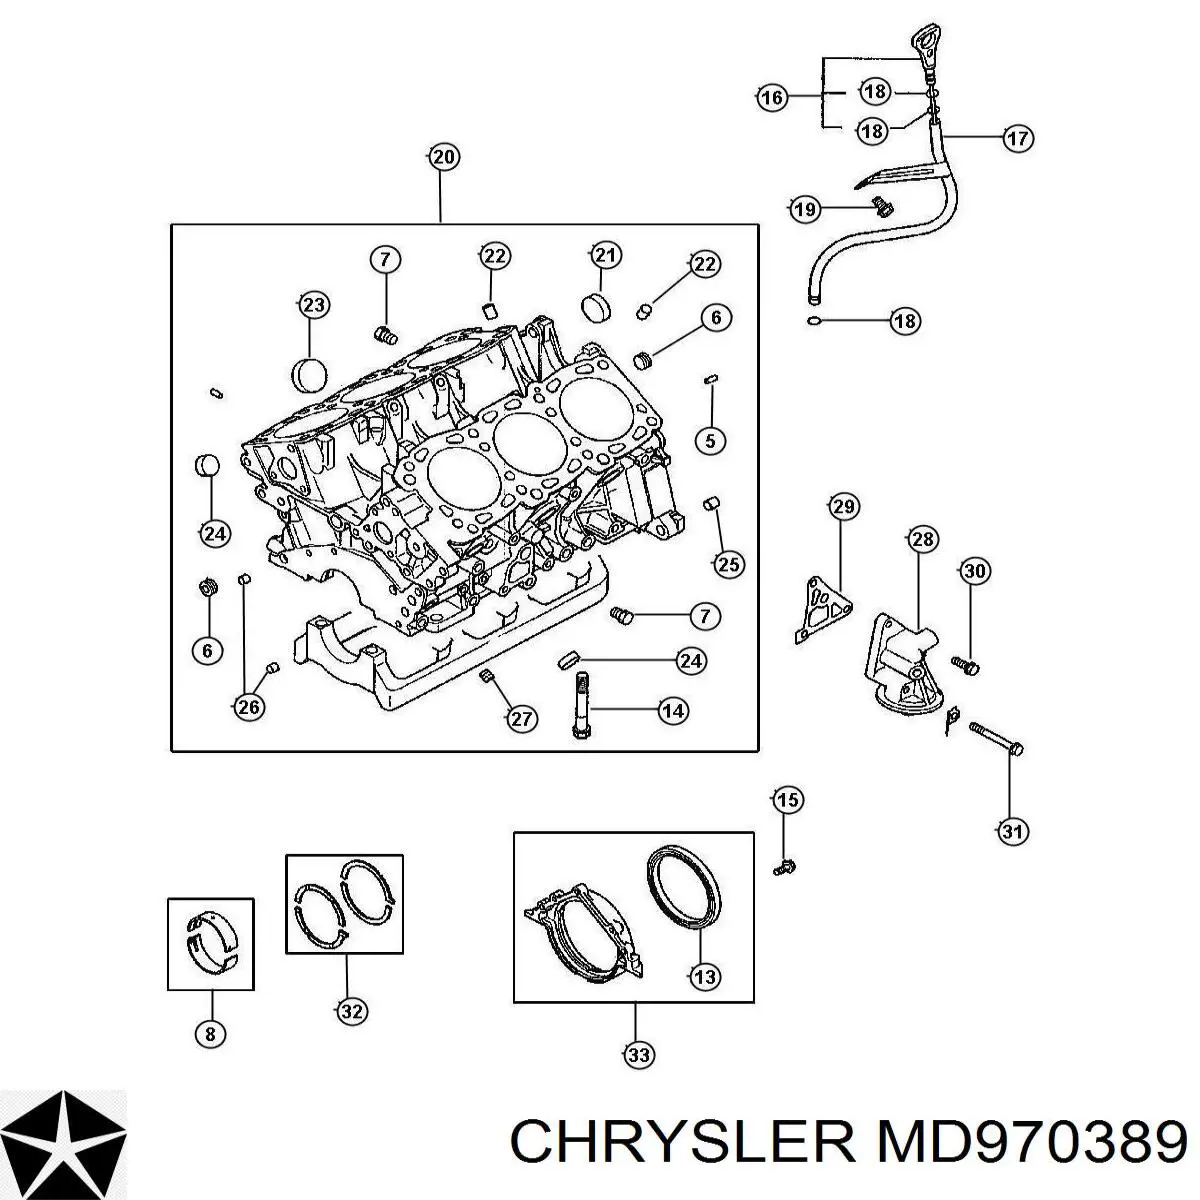 MD970389 Chrysler герметик поддона картера двигателя